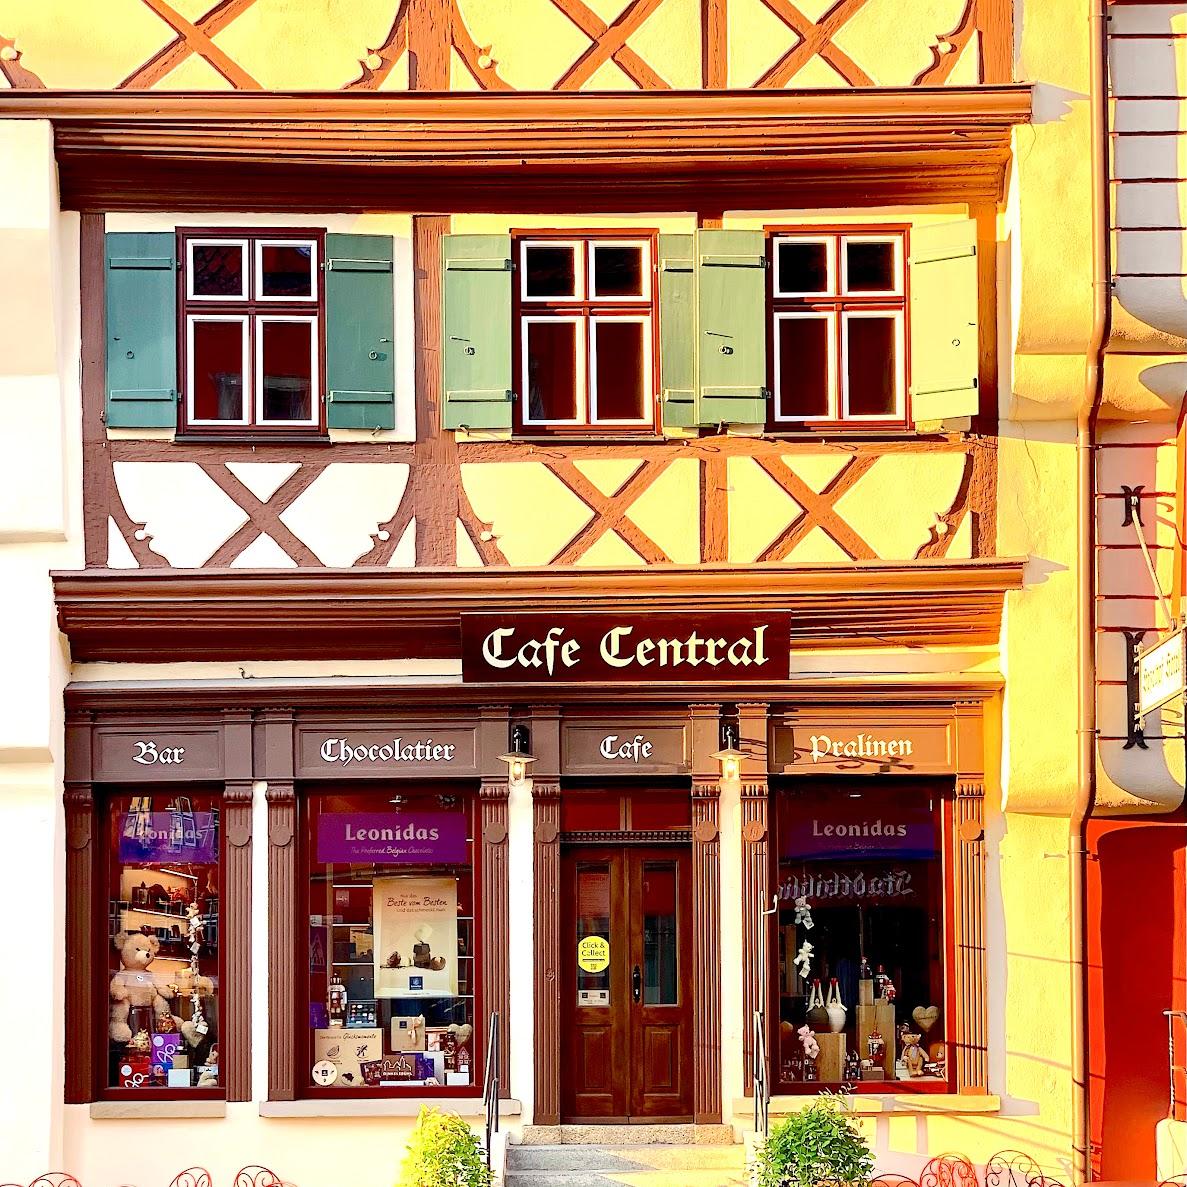 Restaurant "Café central" in Dinkelsbühl